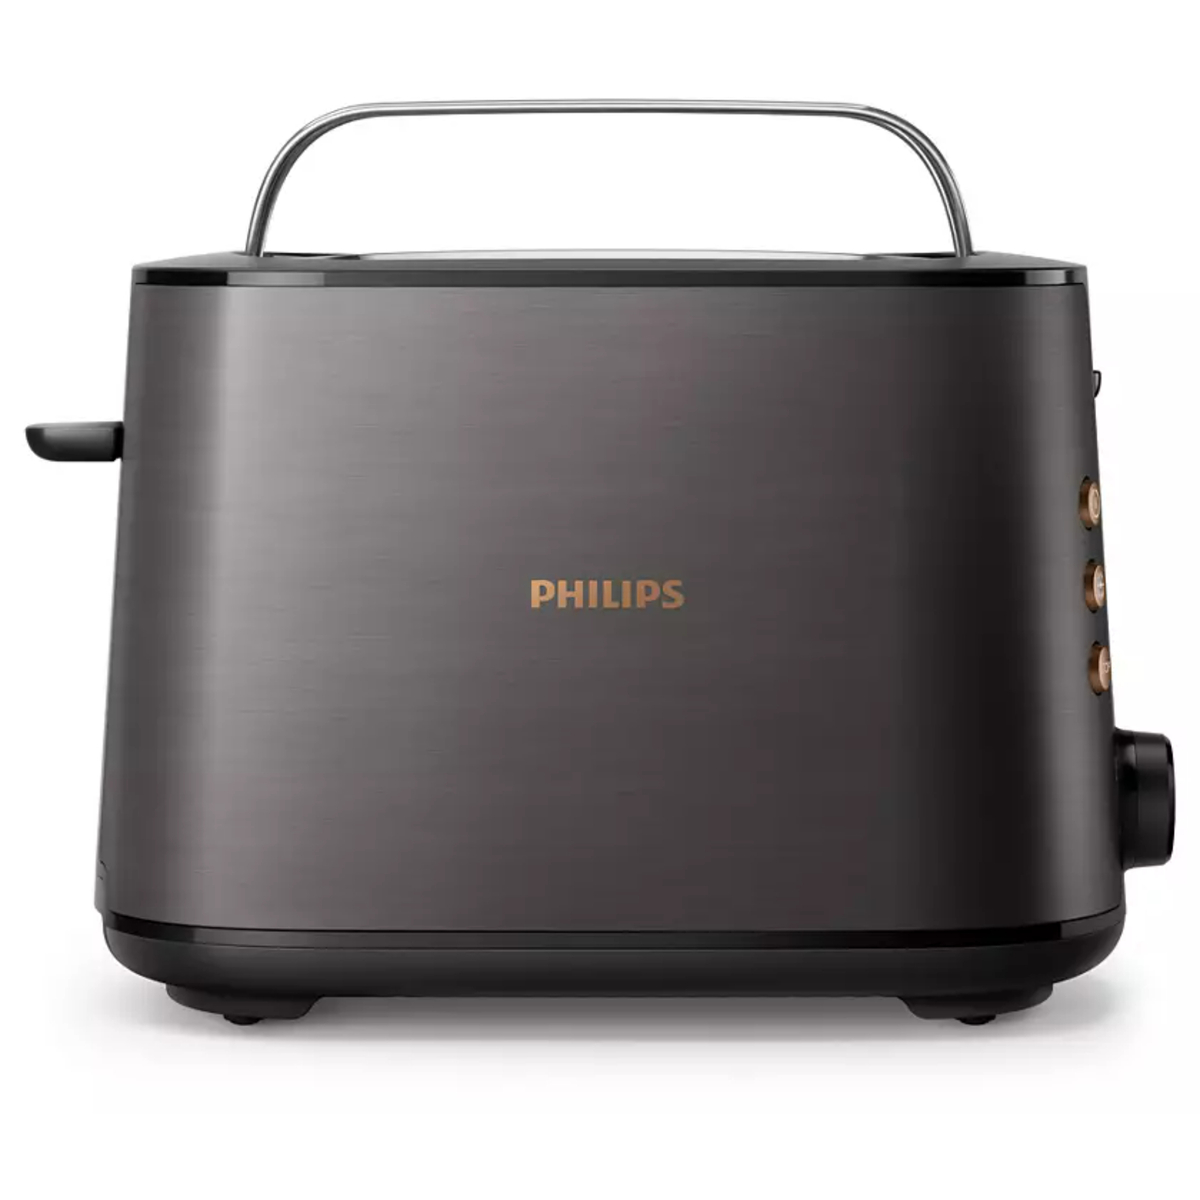 Philips 2 Slice Bread Toaster, 950W, Black Copper, HD2650 31